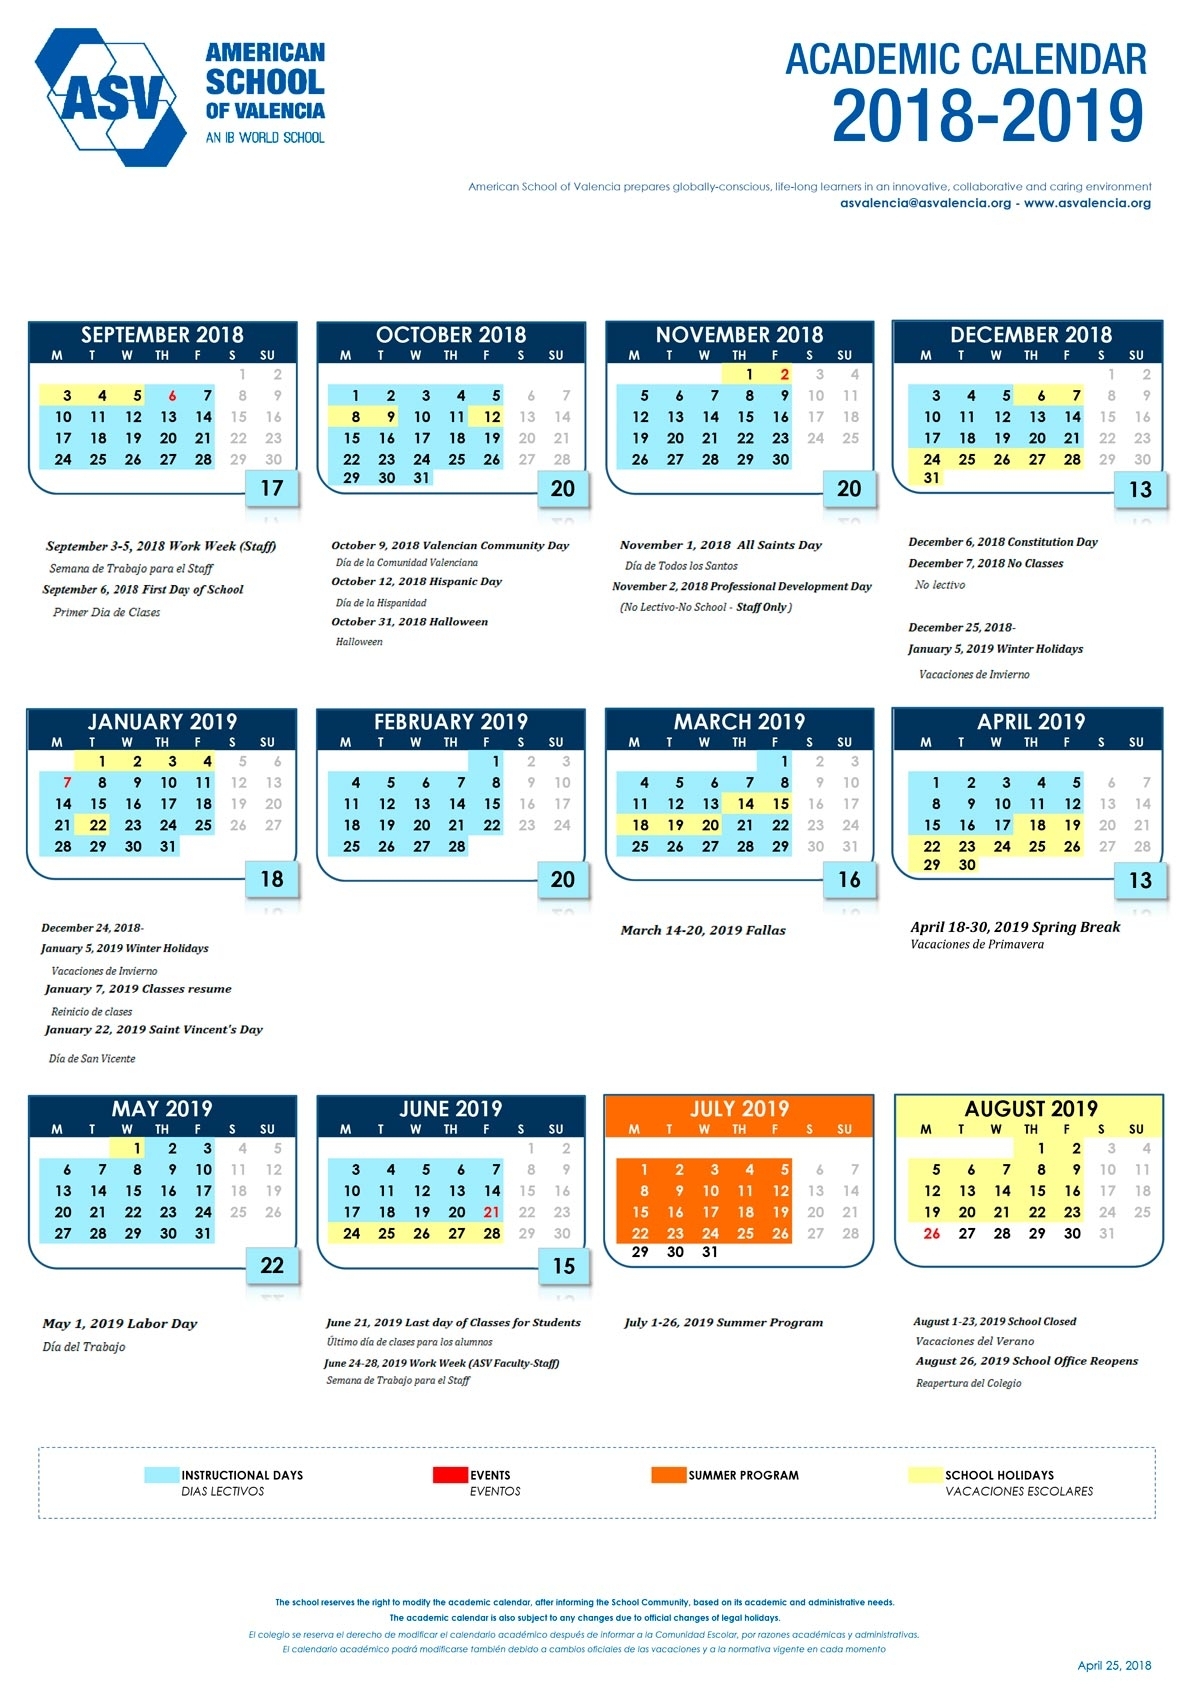 Uc Berkeley Academic Calendar 2019 20